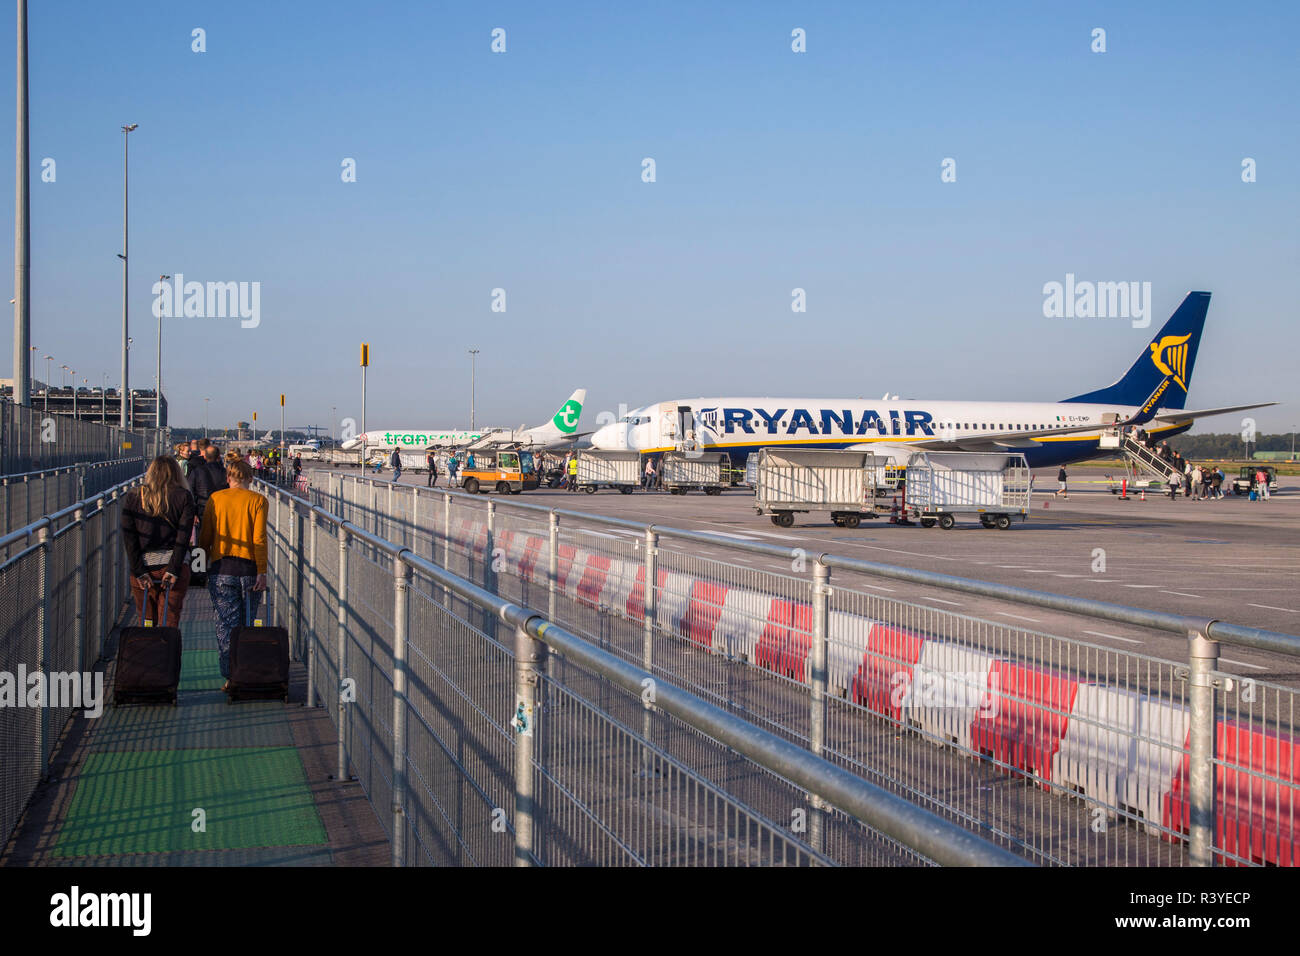 Die Fluggäste in Ryanair Boeing 737-800 Flugzeug auf dem Flughafen Eindhoven, Niederlande. Ryanair ist Europas größte Low Cost Airline mit einer einzigen Art Flotte der Boeing 737-800. Ryanair vor kurzem geändert Es ist Handgepäck Politik nur eine kleine für sich. Stockfoto